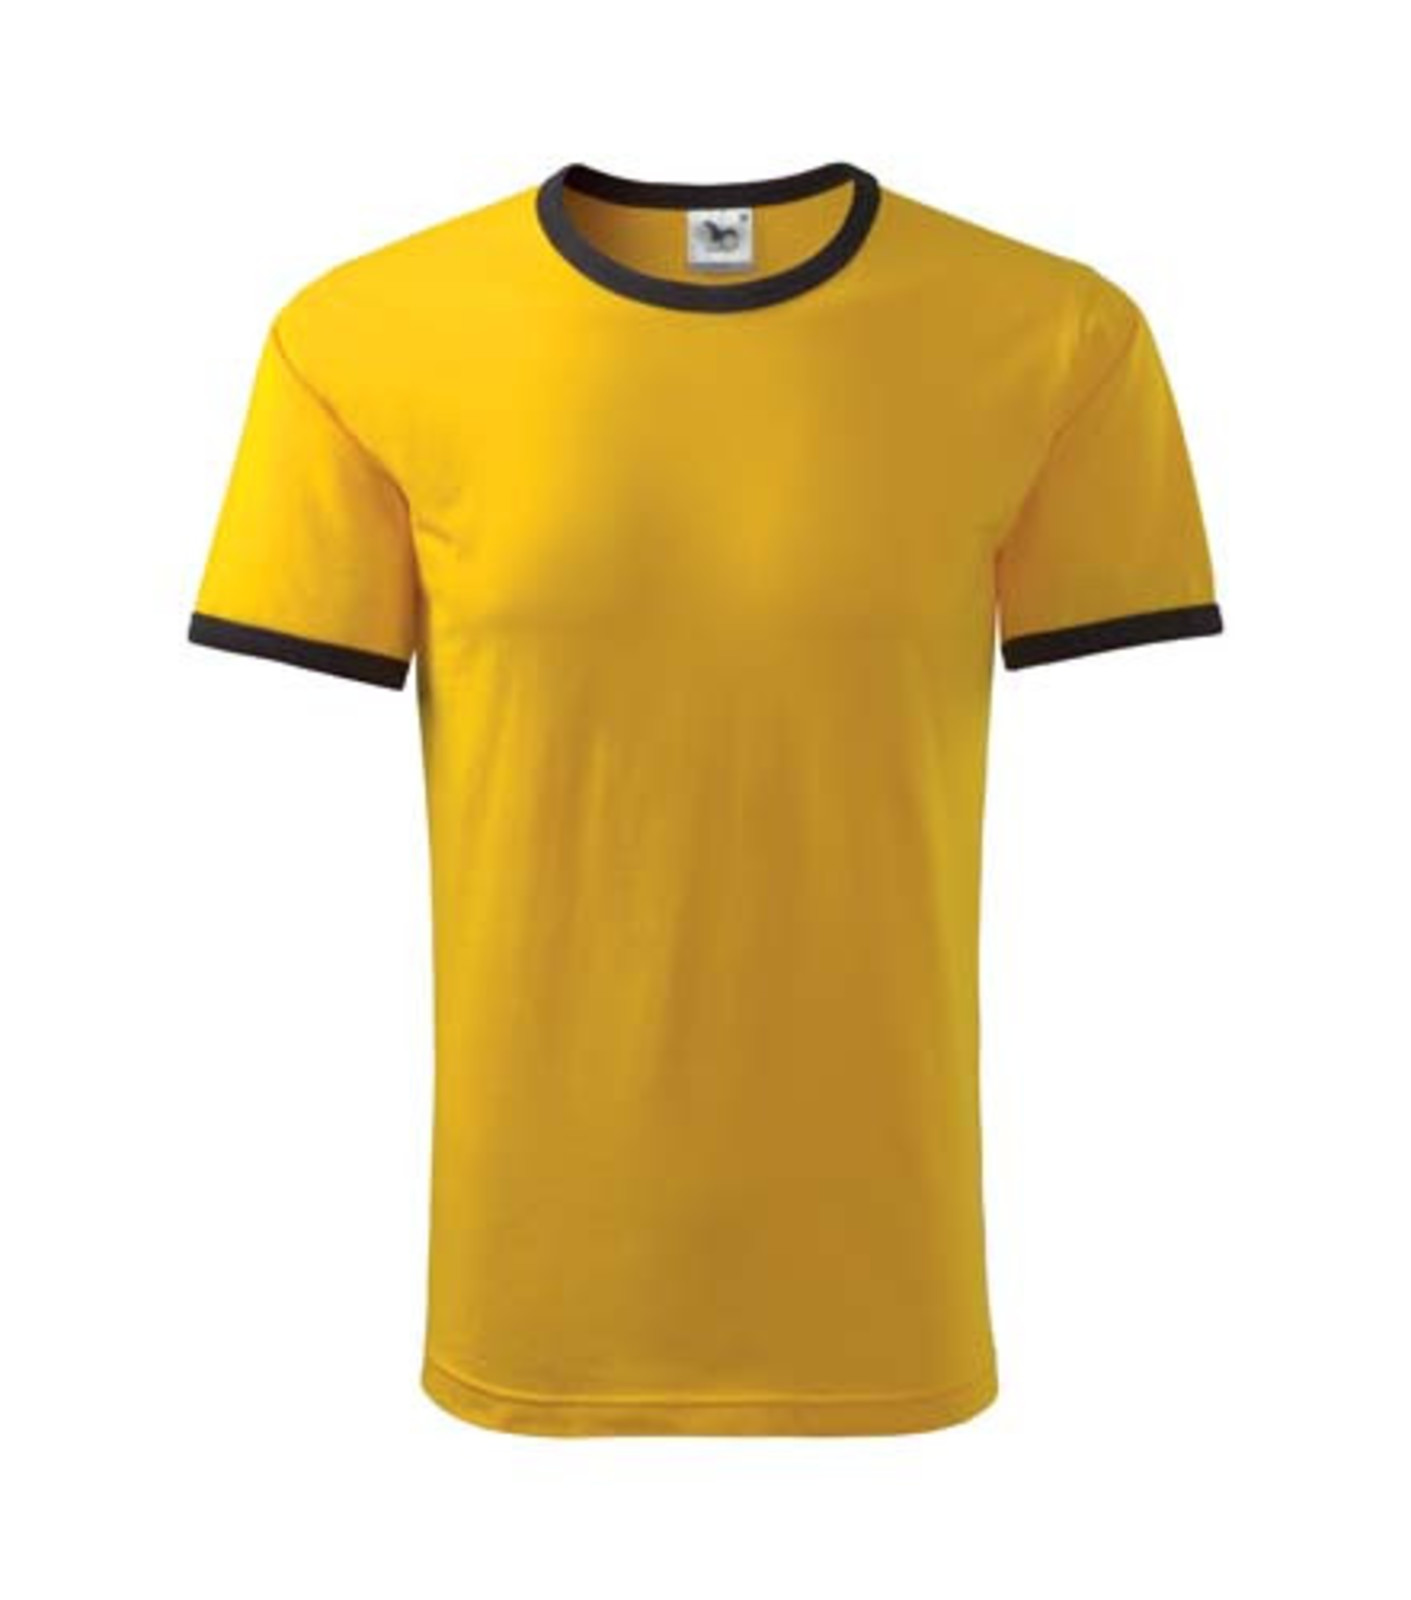 Unisex tričko Adler Infinity 131 - veľkosť: S, farba: čierna/žltá